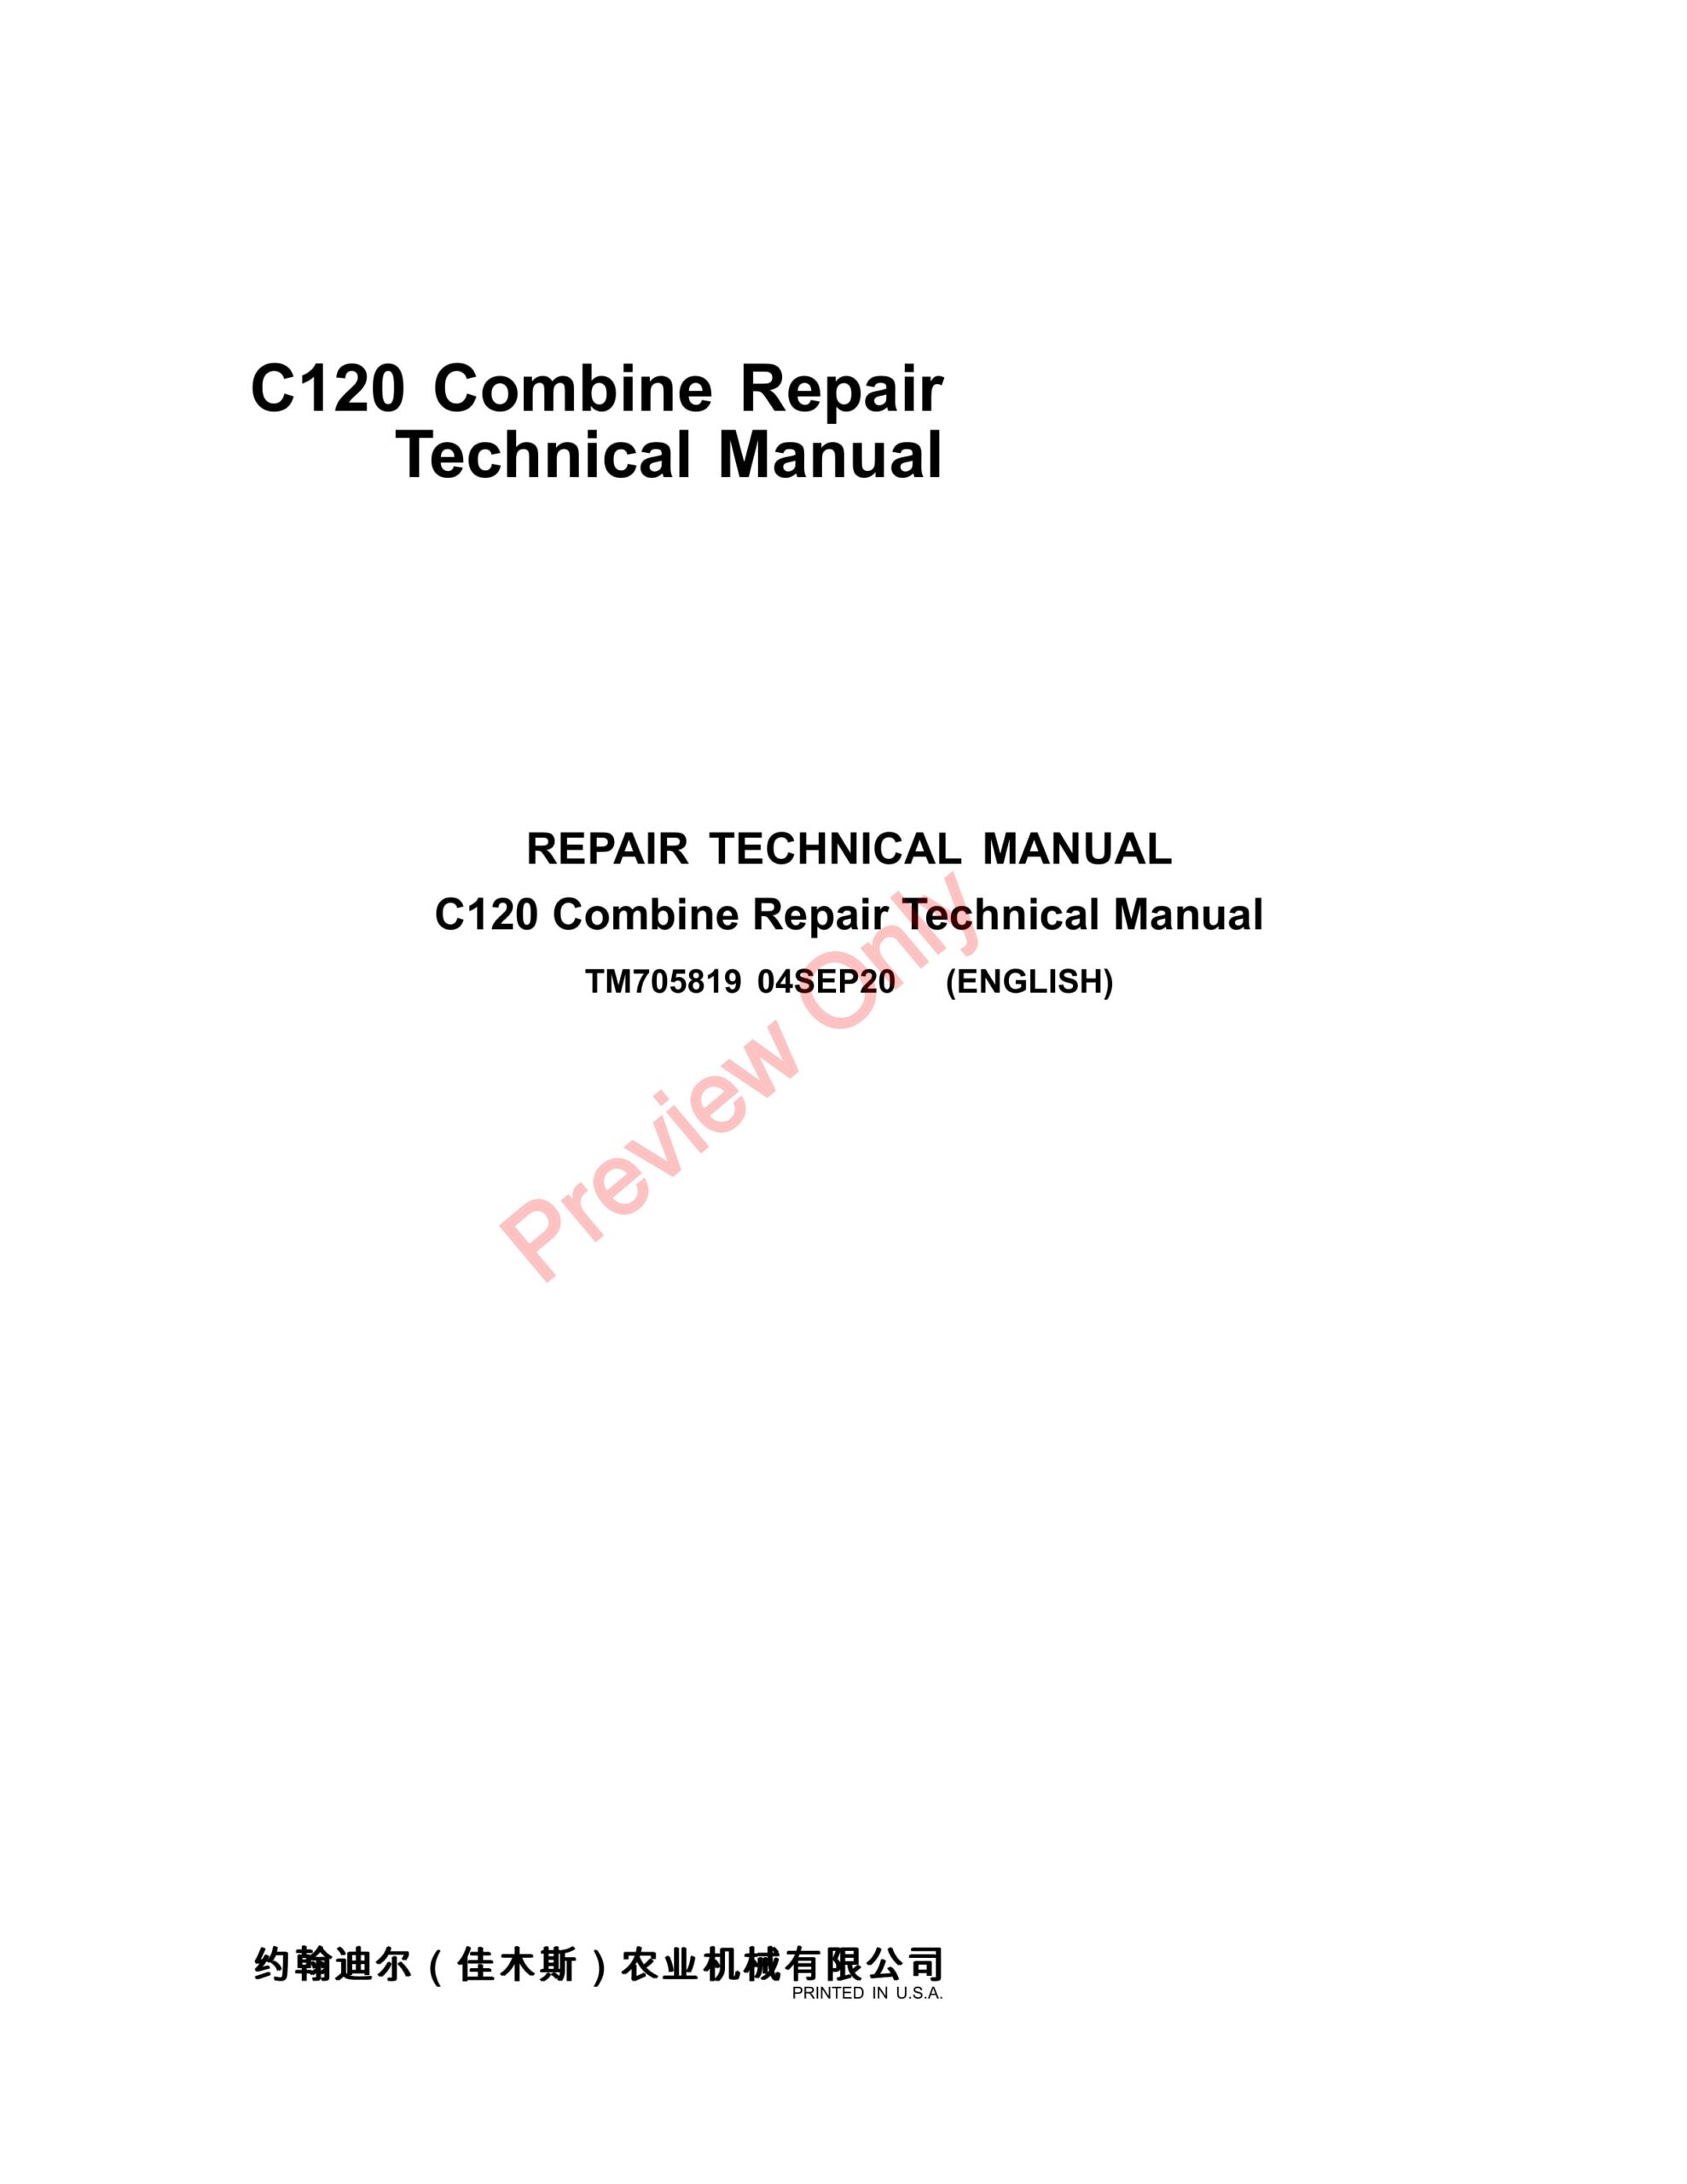 John Deere C120 Combine Repair Technical Manual TM705819 04SEP20-1